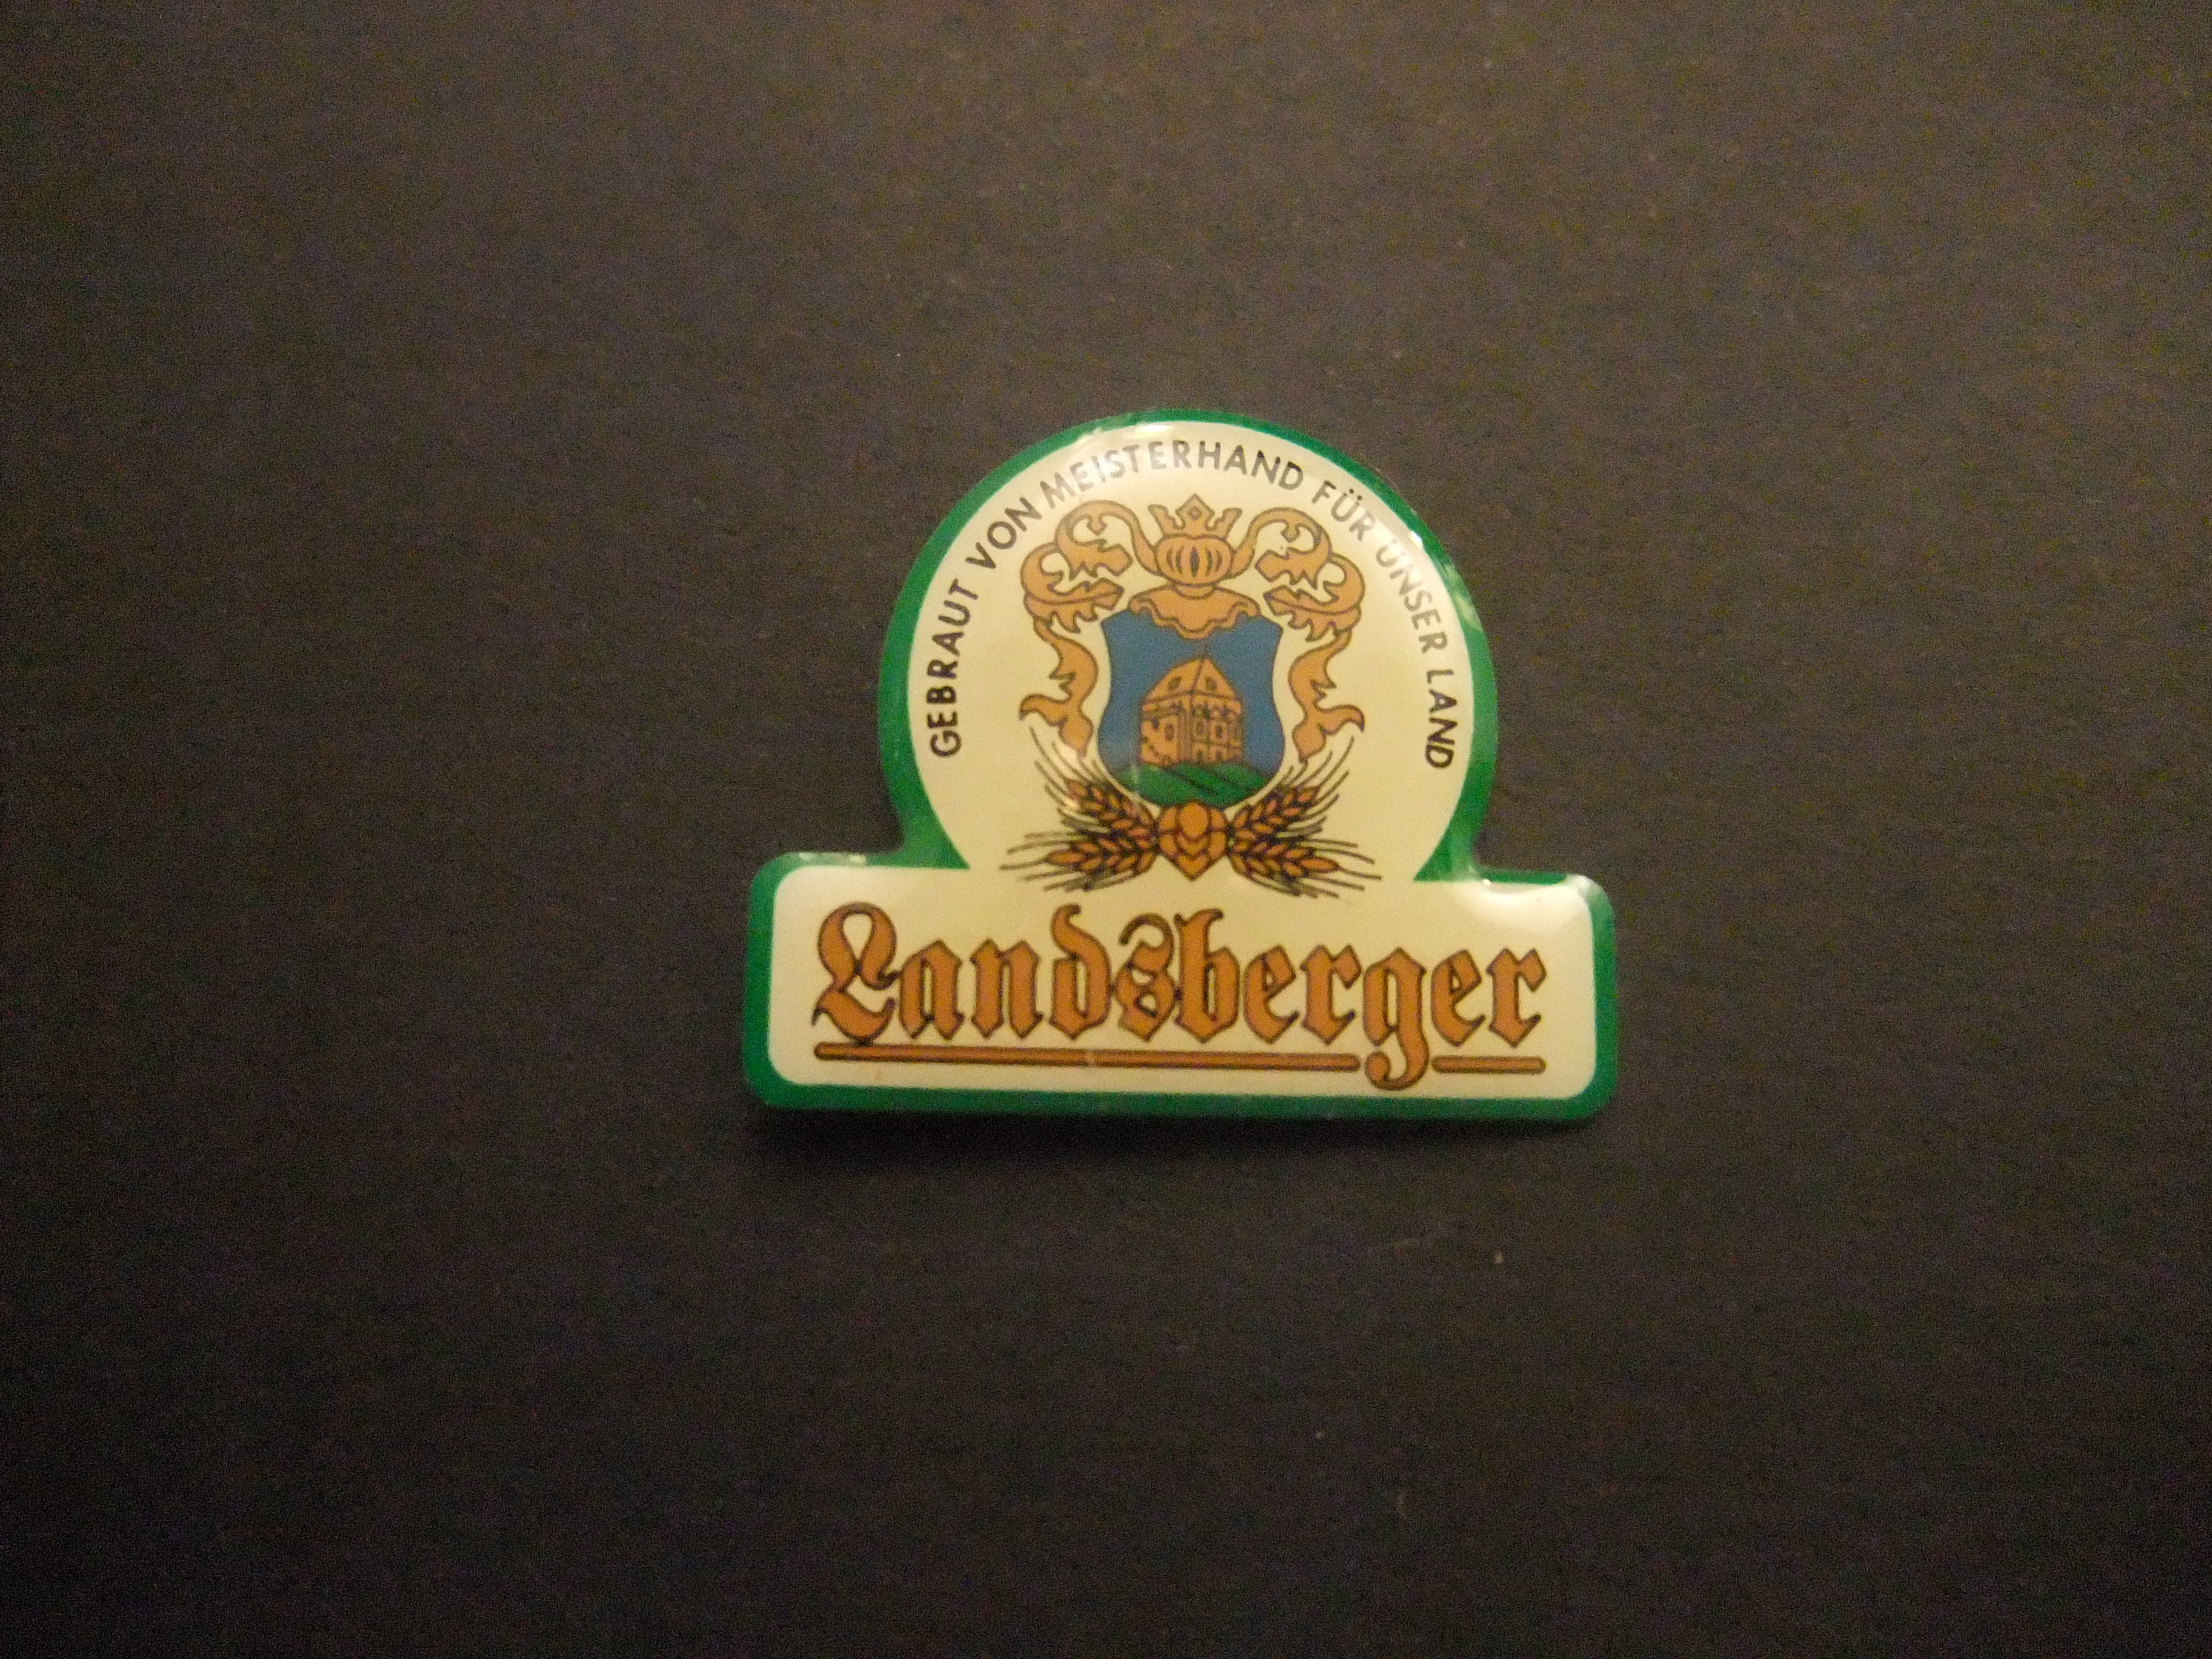 Landsberger bier (Gebraut von Meisterhand für unser Land)